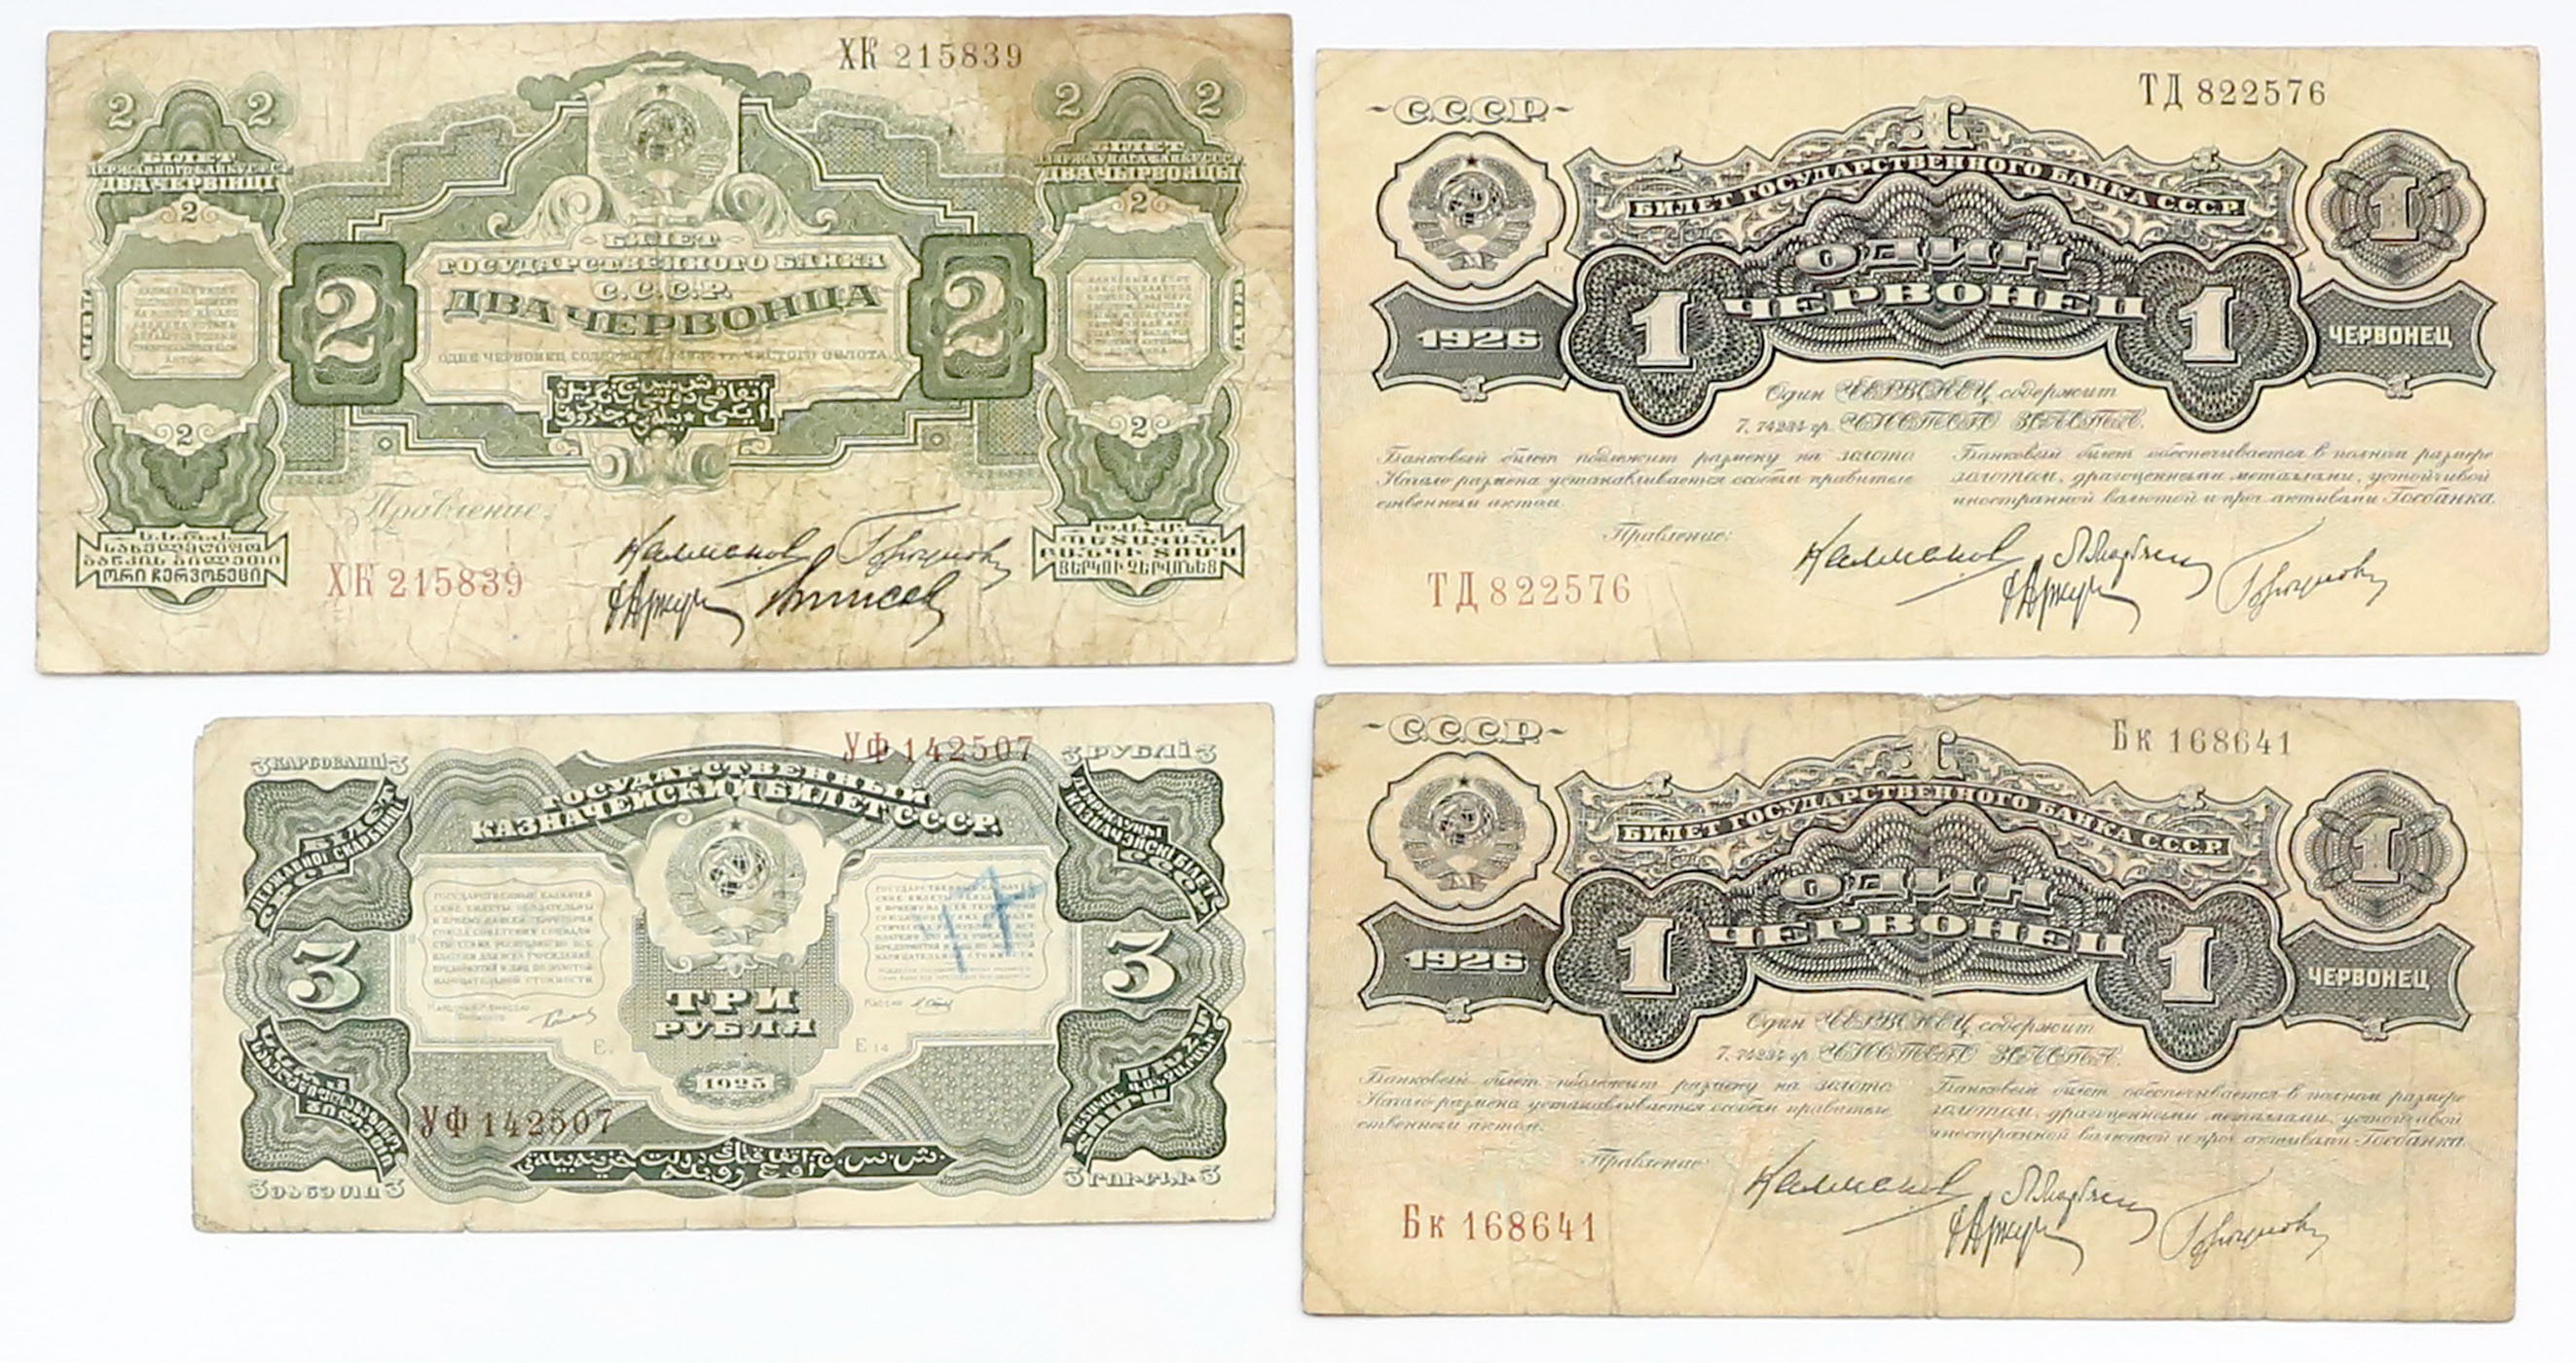 Rosja. 1-2 czerwońce, 3 ruble, 1925-1928, zestaw 4 banknotów - RZADKIE